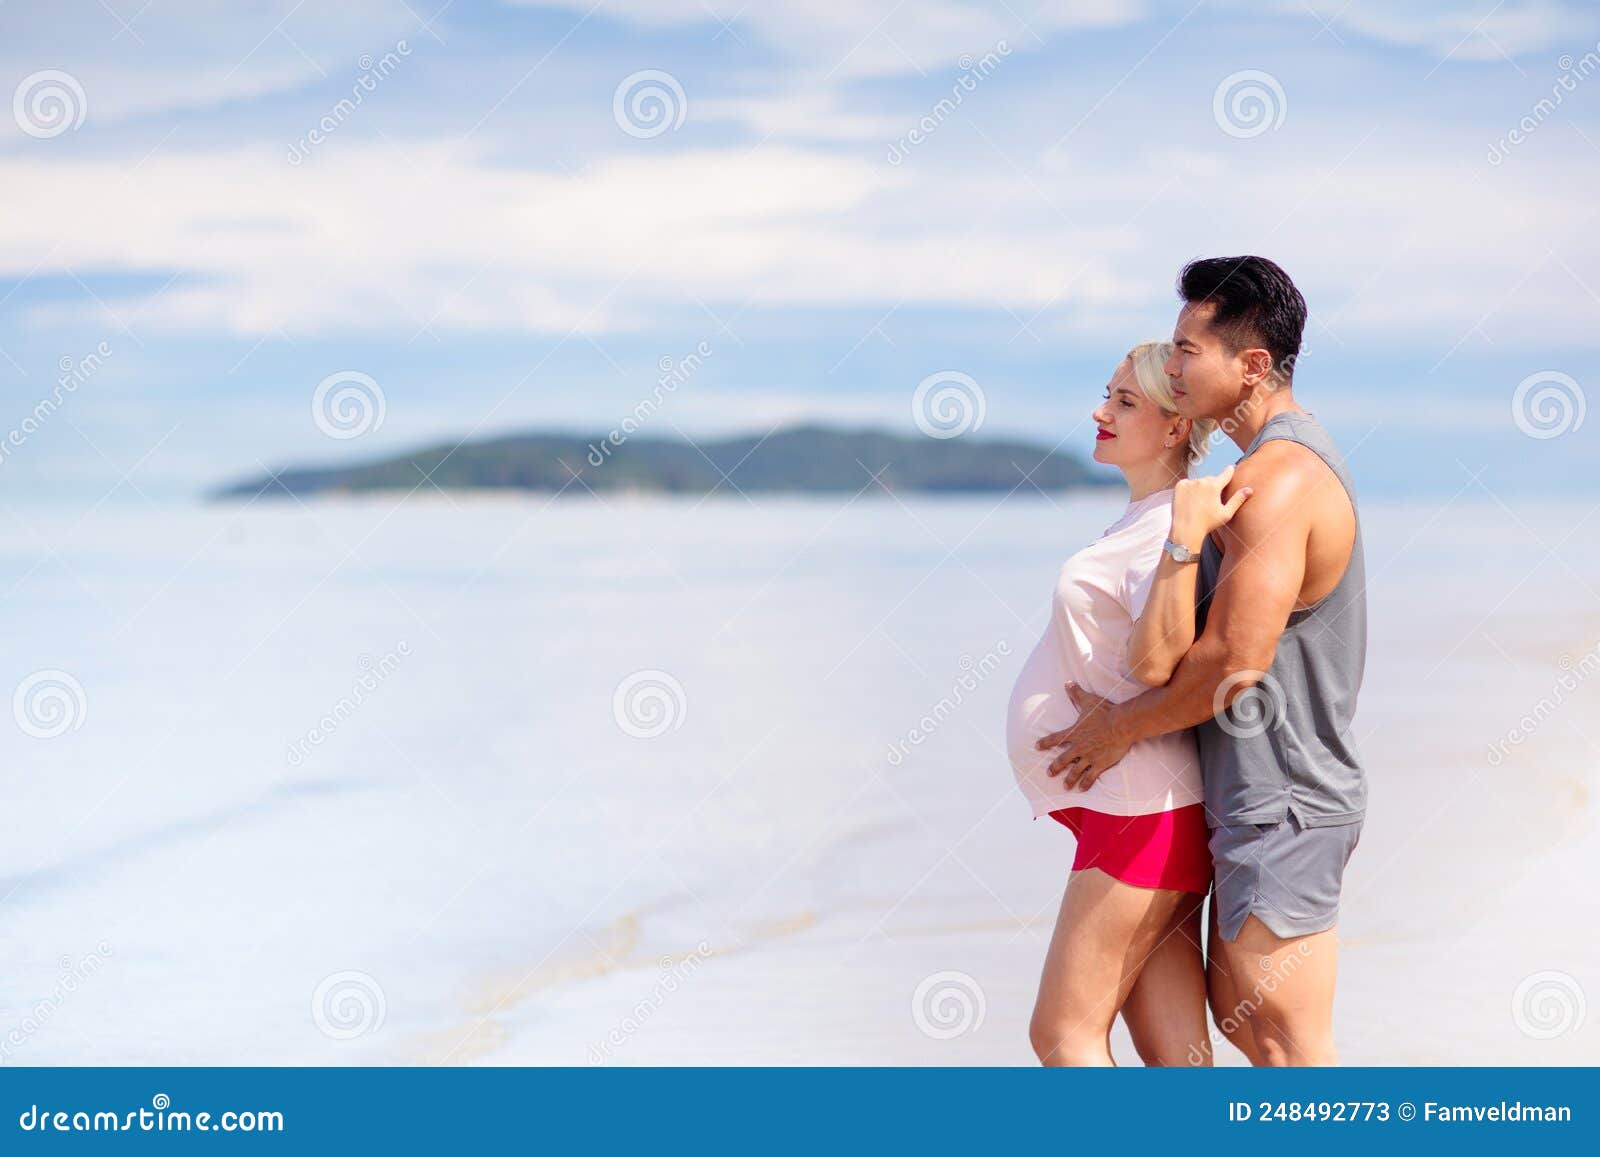 915 Interracial Pregnant Couple Stock Photos photo photo